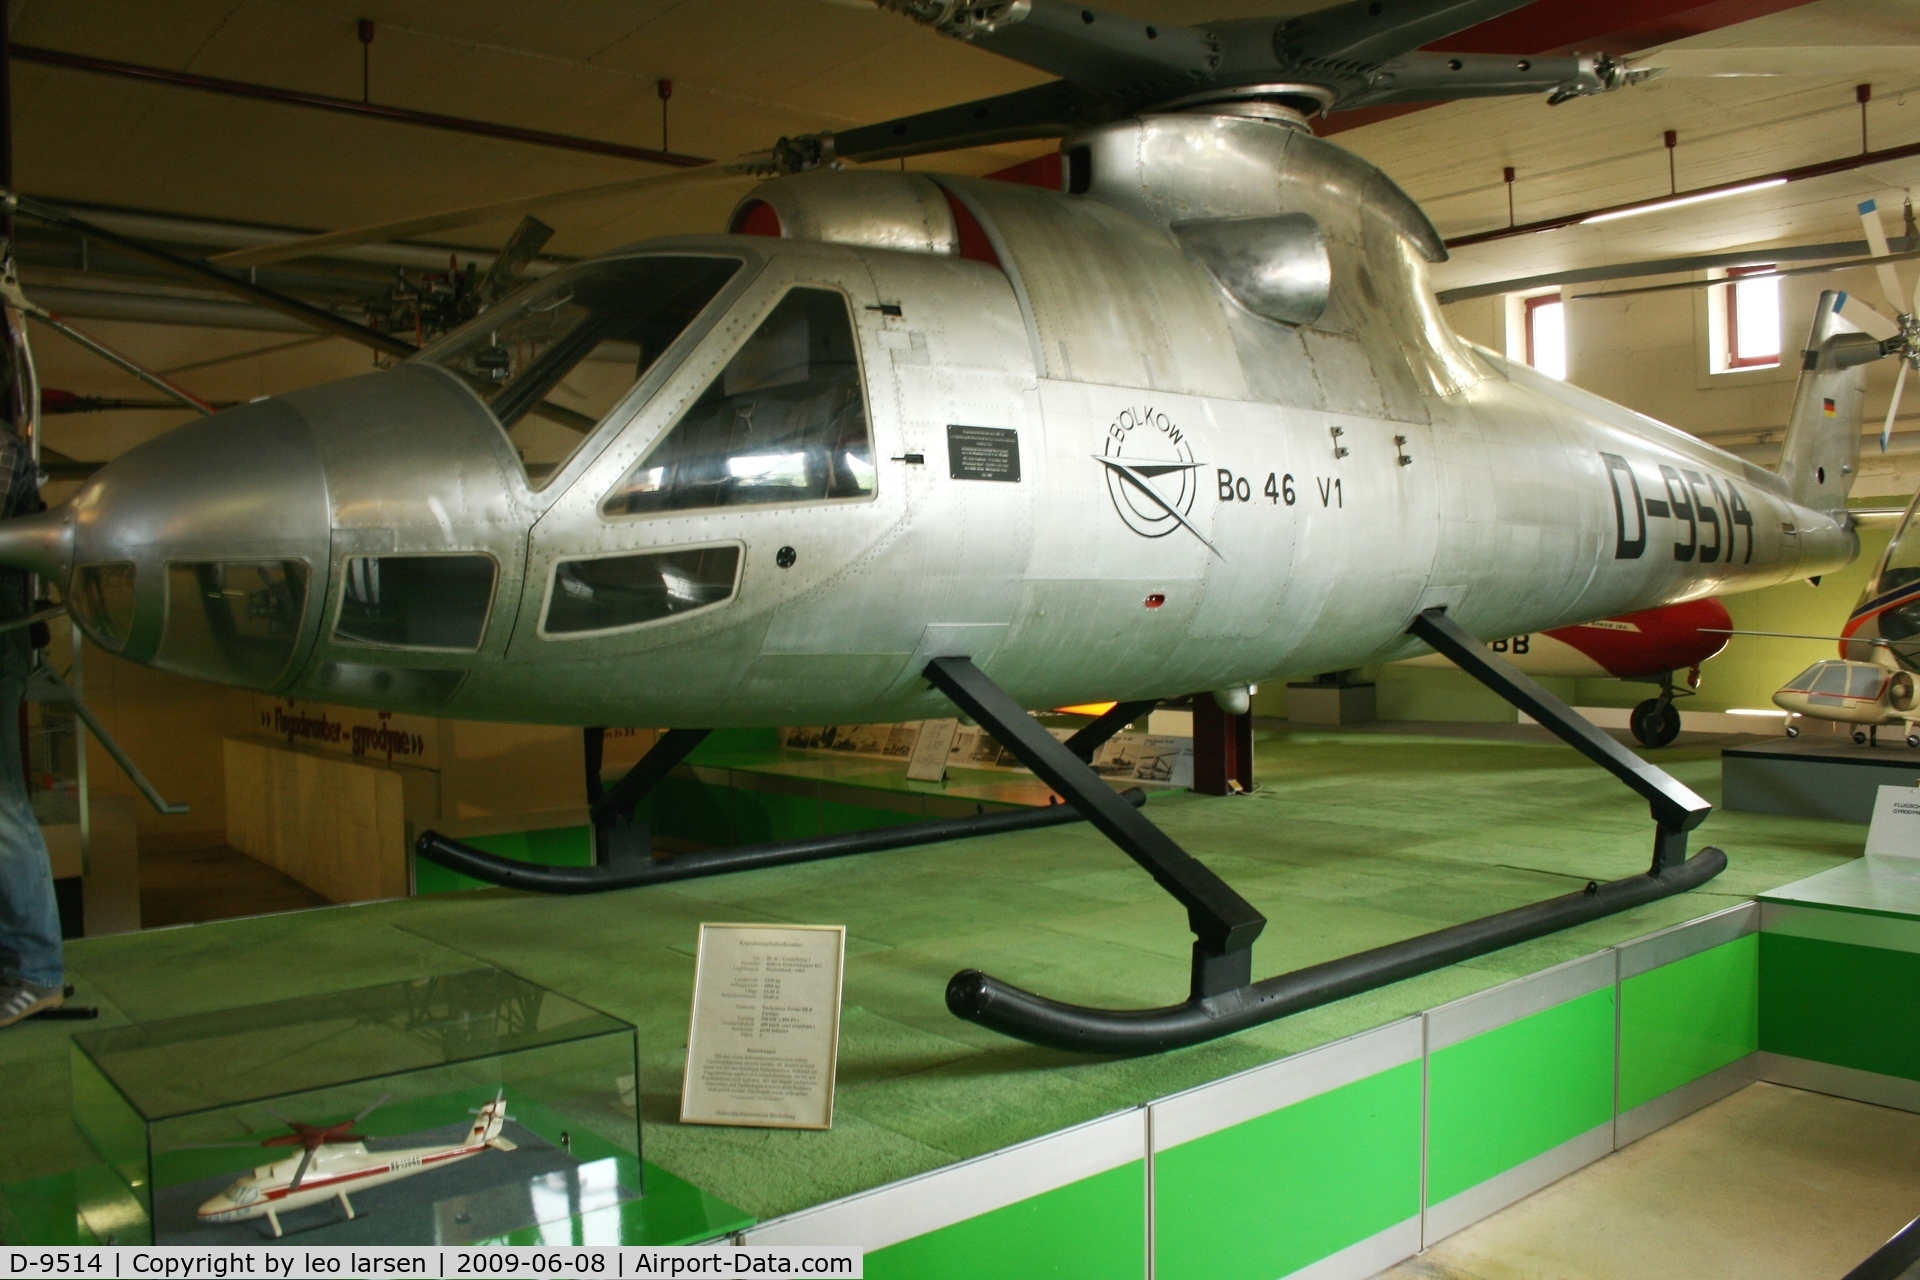 D-9514, 1964 Bolkow Bo 46 C/N V-1, Bückeburg Helikopter museum 8.6.2009